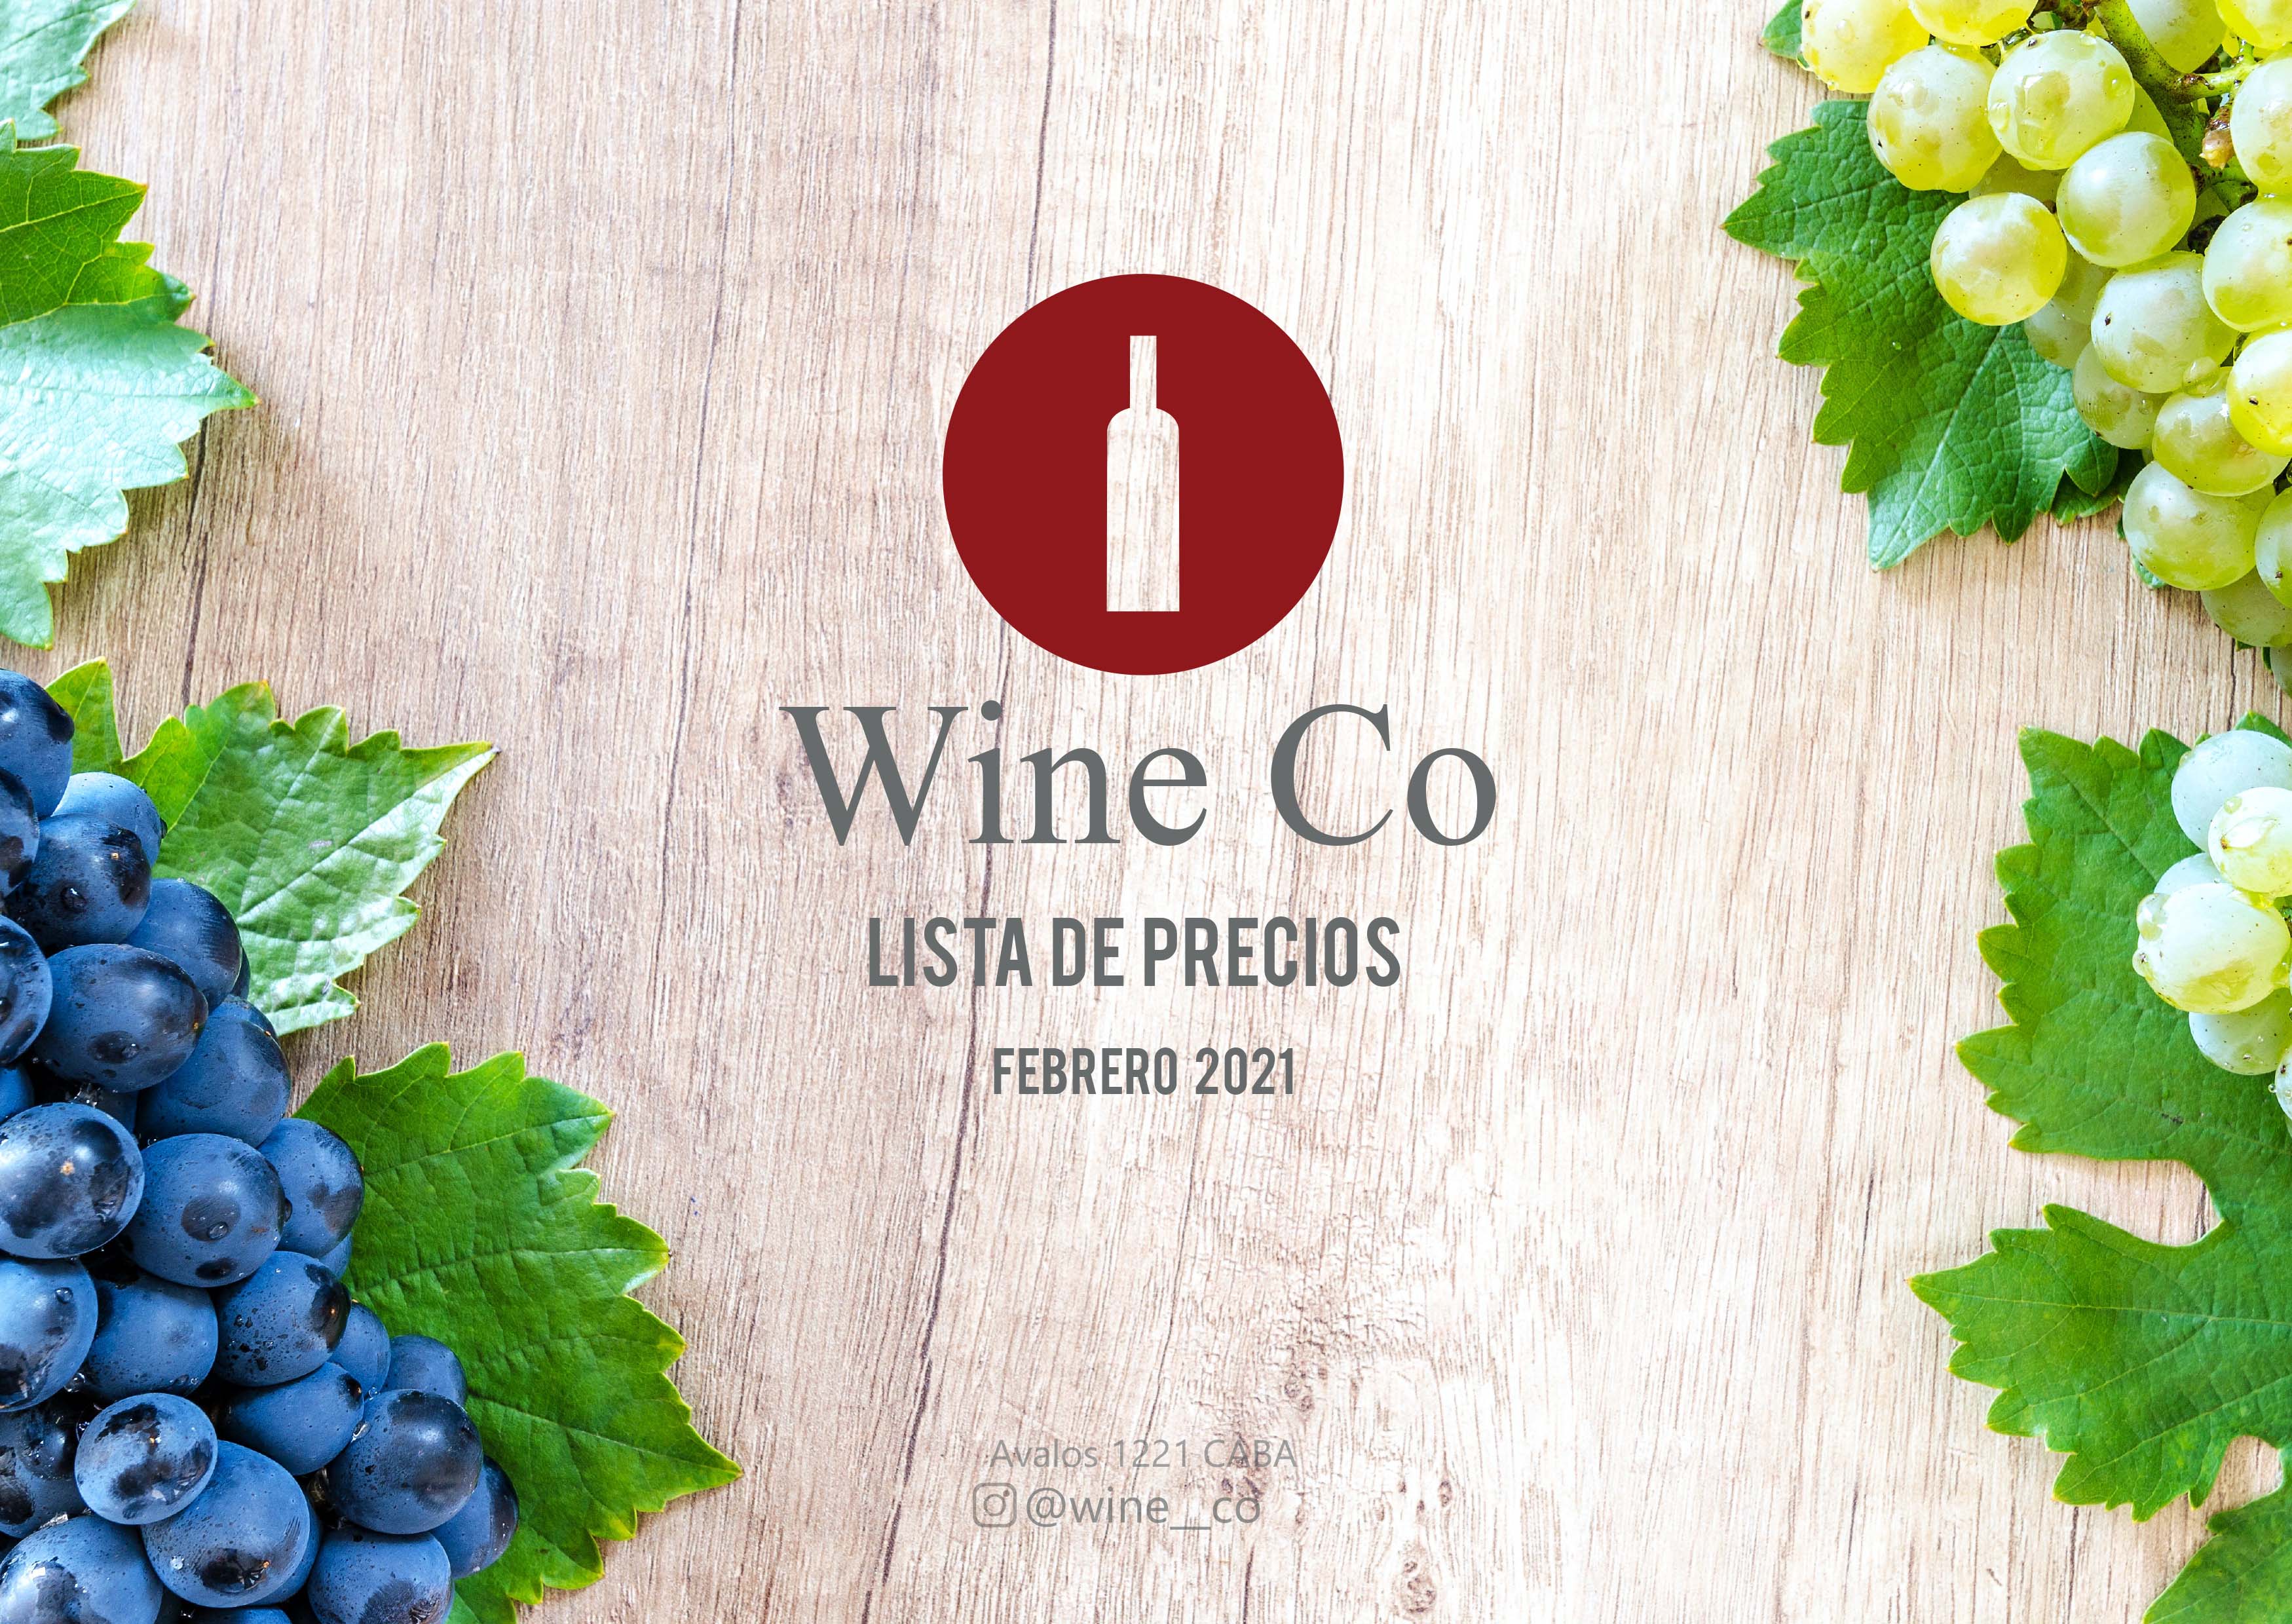 lista de precios wineco